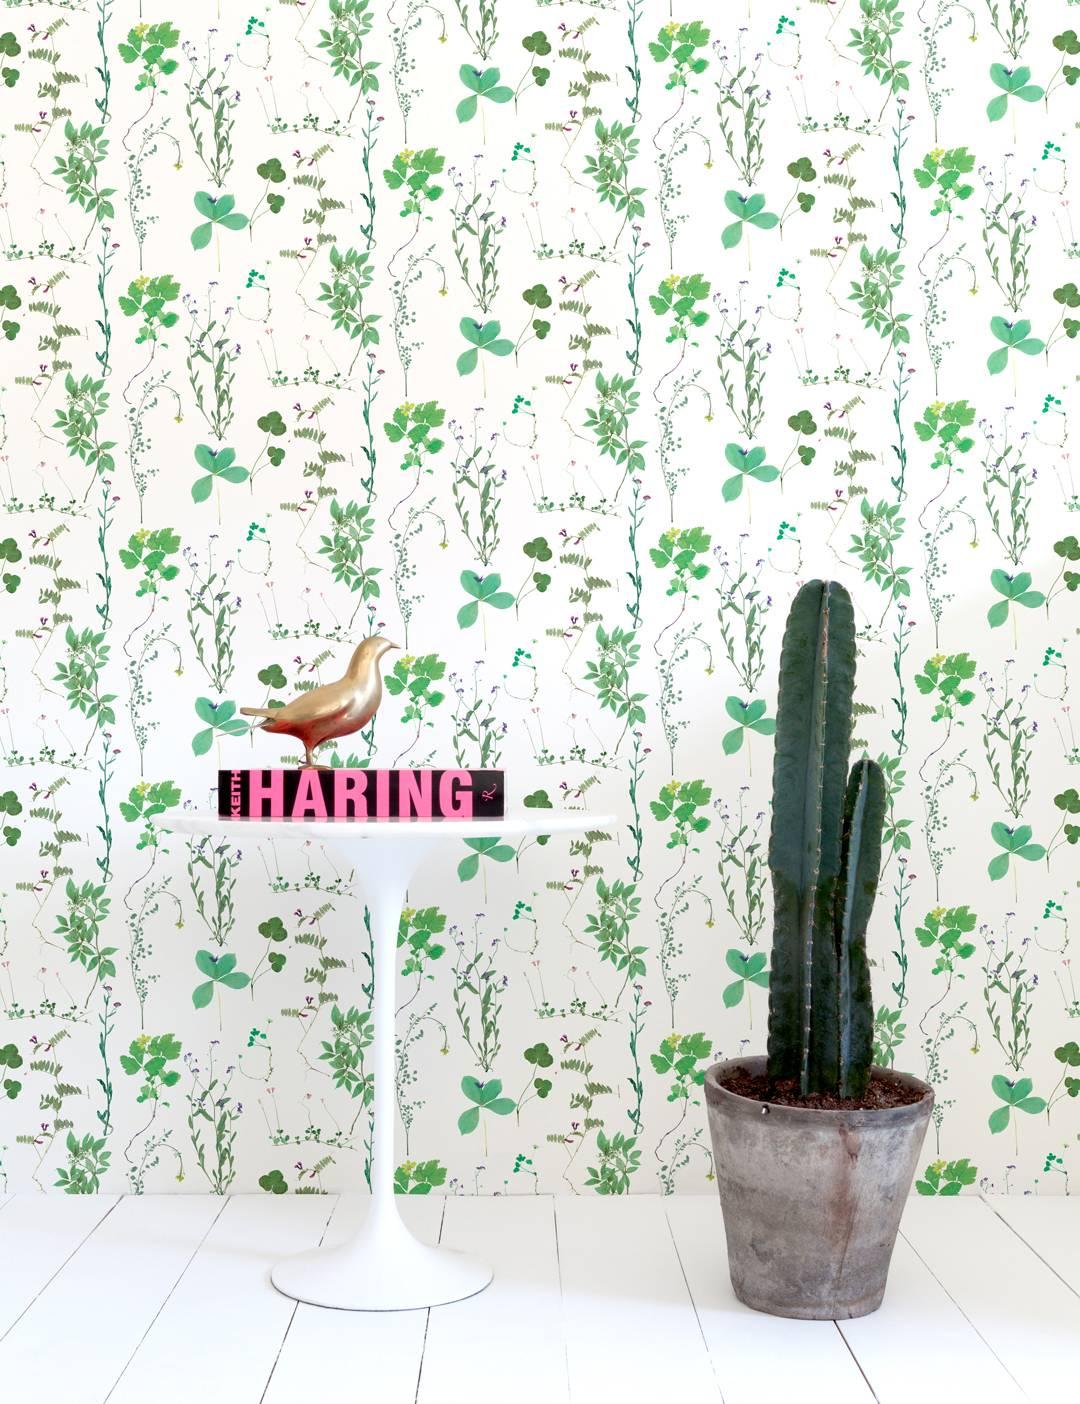 Die Gründerin von Ivana Helsinki, Paola Suhonen, presste Blumen in ein Buch und gründete Jahre später Herbario. Aimée arbeitete mit diesen Elementen, um eine Vielzahl von farbenfrohen Tapeten und Stoffen für den Wohnbereich zu entwerfen. 

Muster